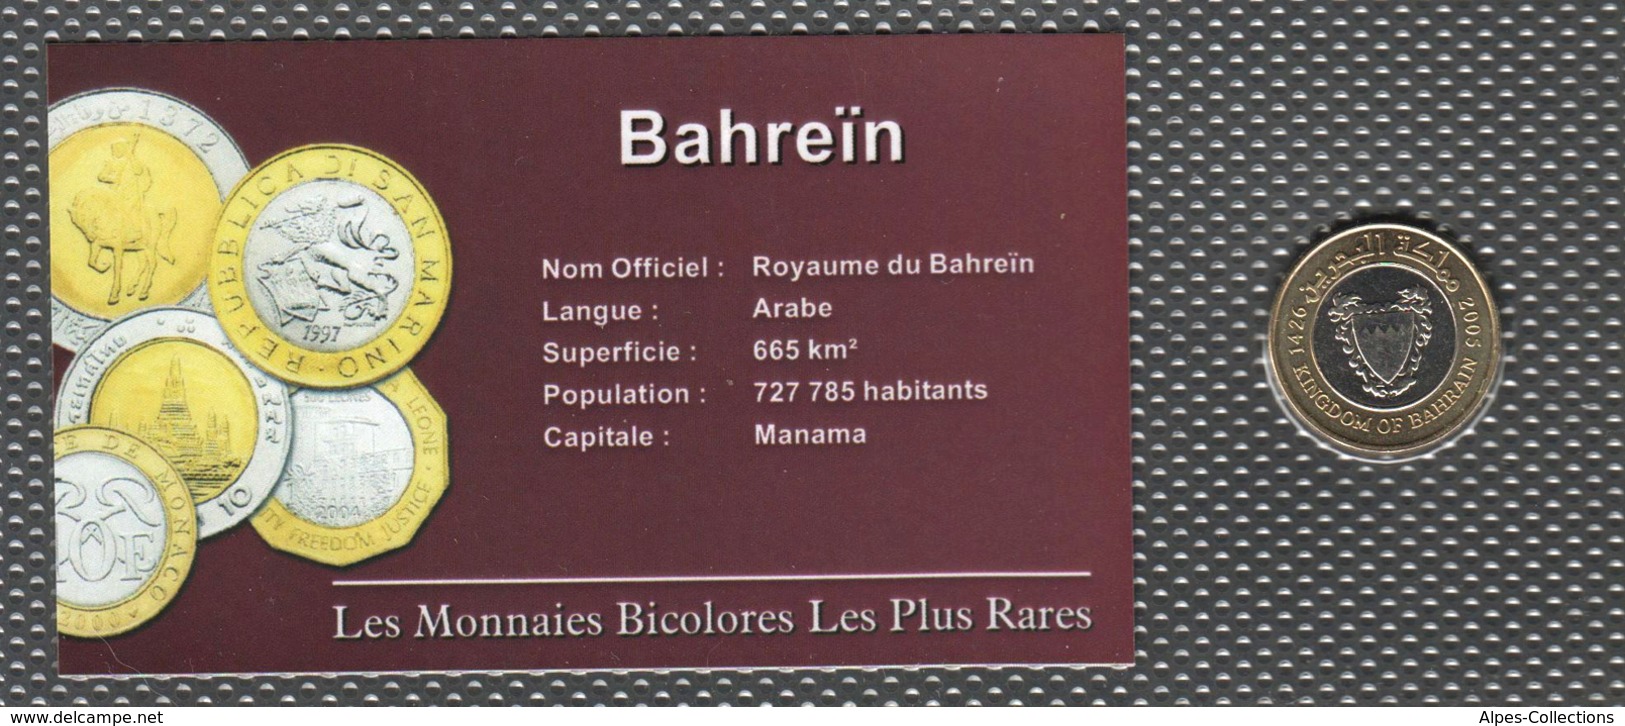 BHR26.1 - BAHREIN - MONNAIES BICOLORES LES PLUS RARES - 100 Fils - 2005 - Bahreïn